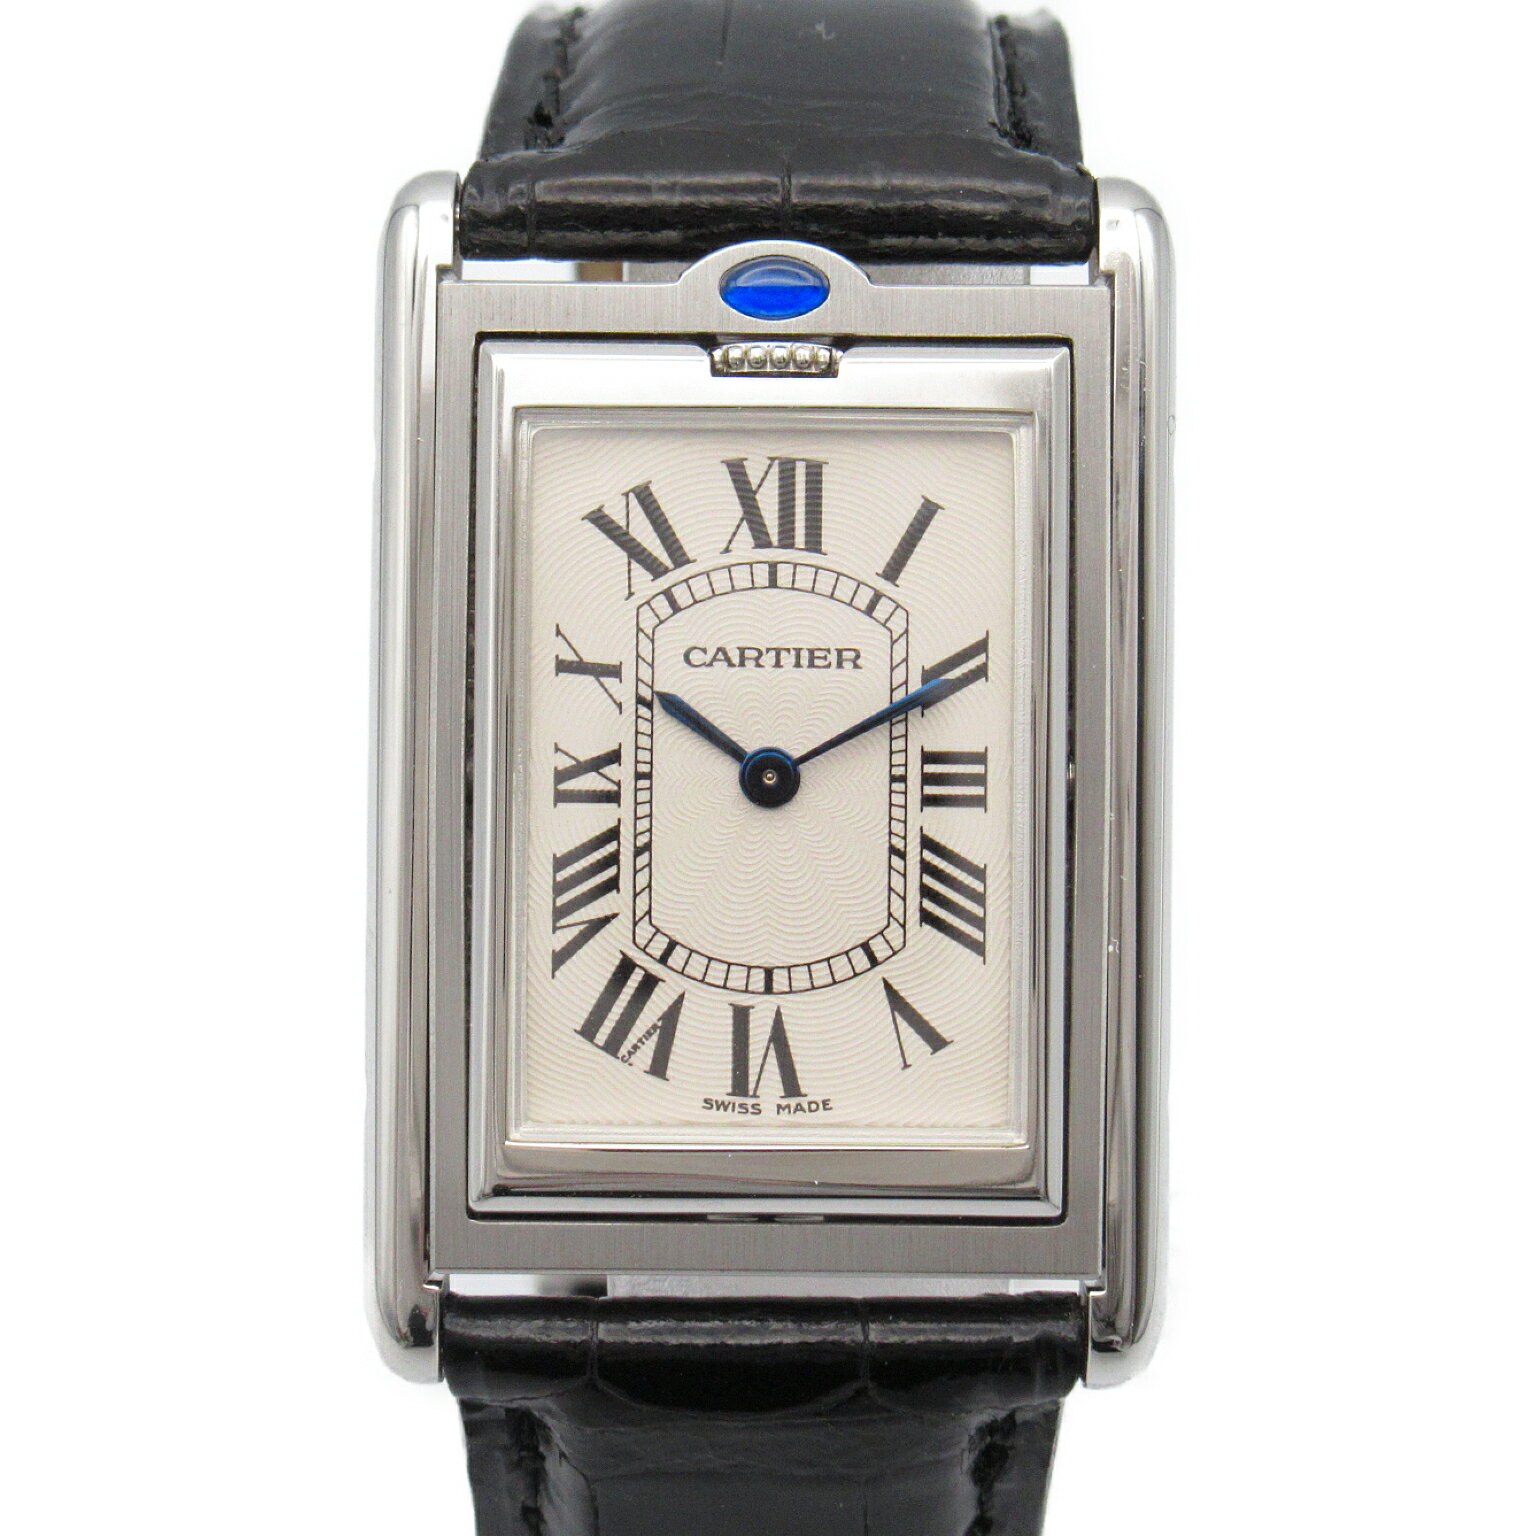 カルティエ CARTIER タンクバスキュラントLM 腕時計 時計 ステンレススチール レザーベルト 革 レディース シルバー系 W1016355 【中古】